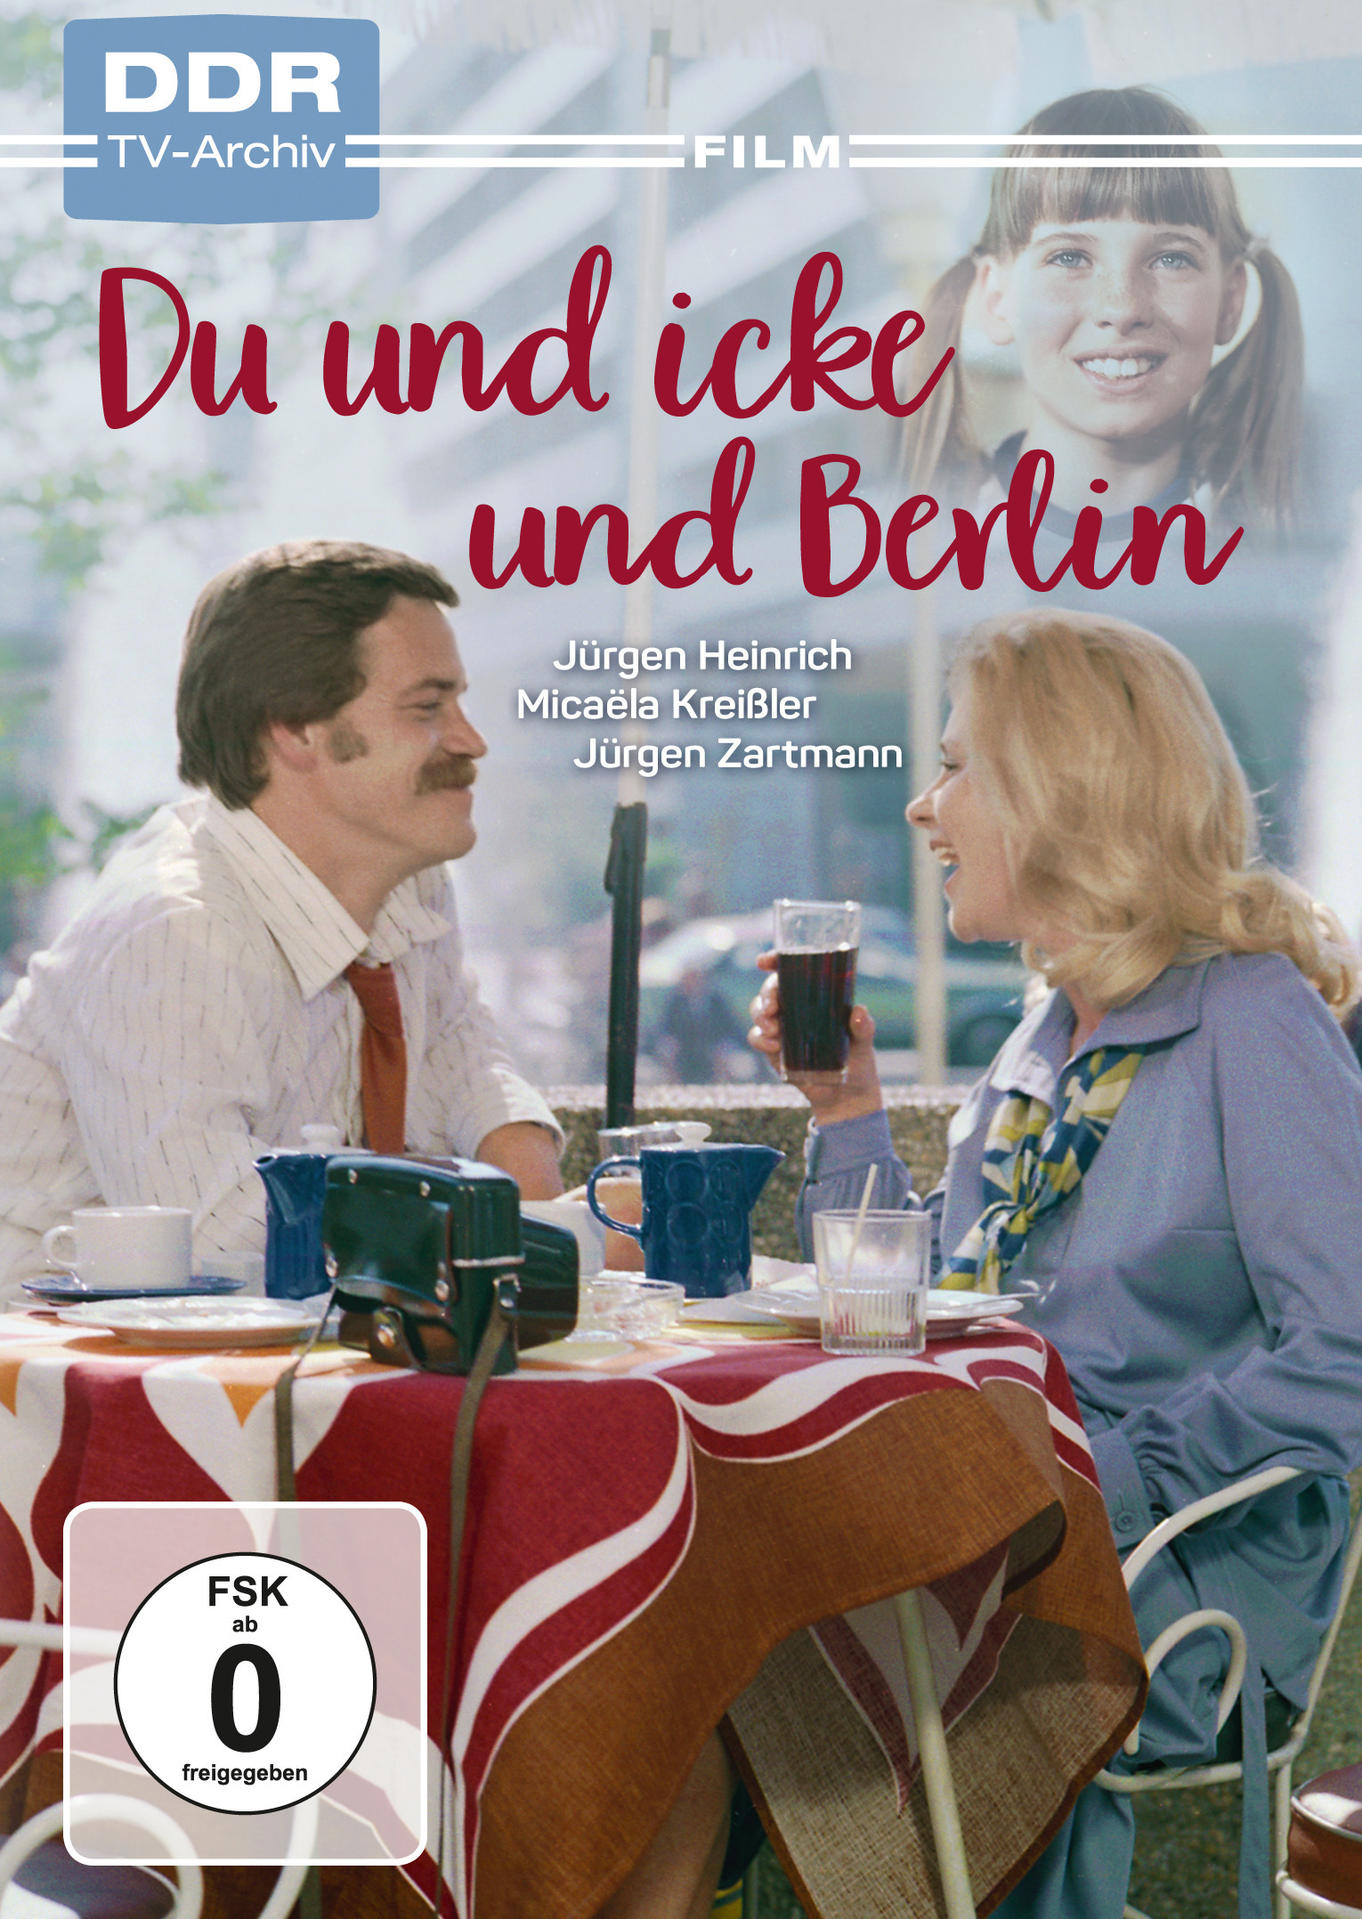 Du und icke und Berlin DVD